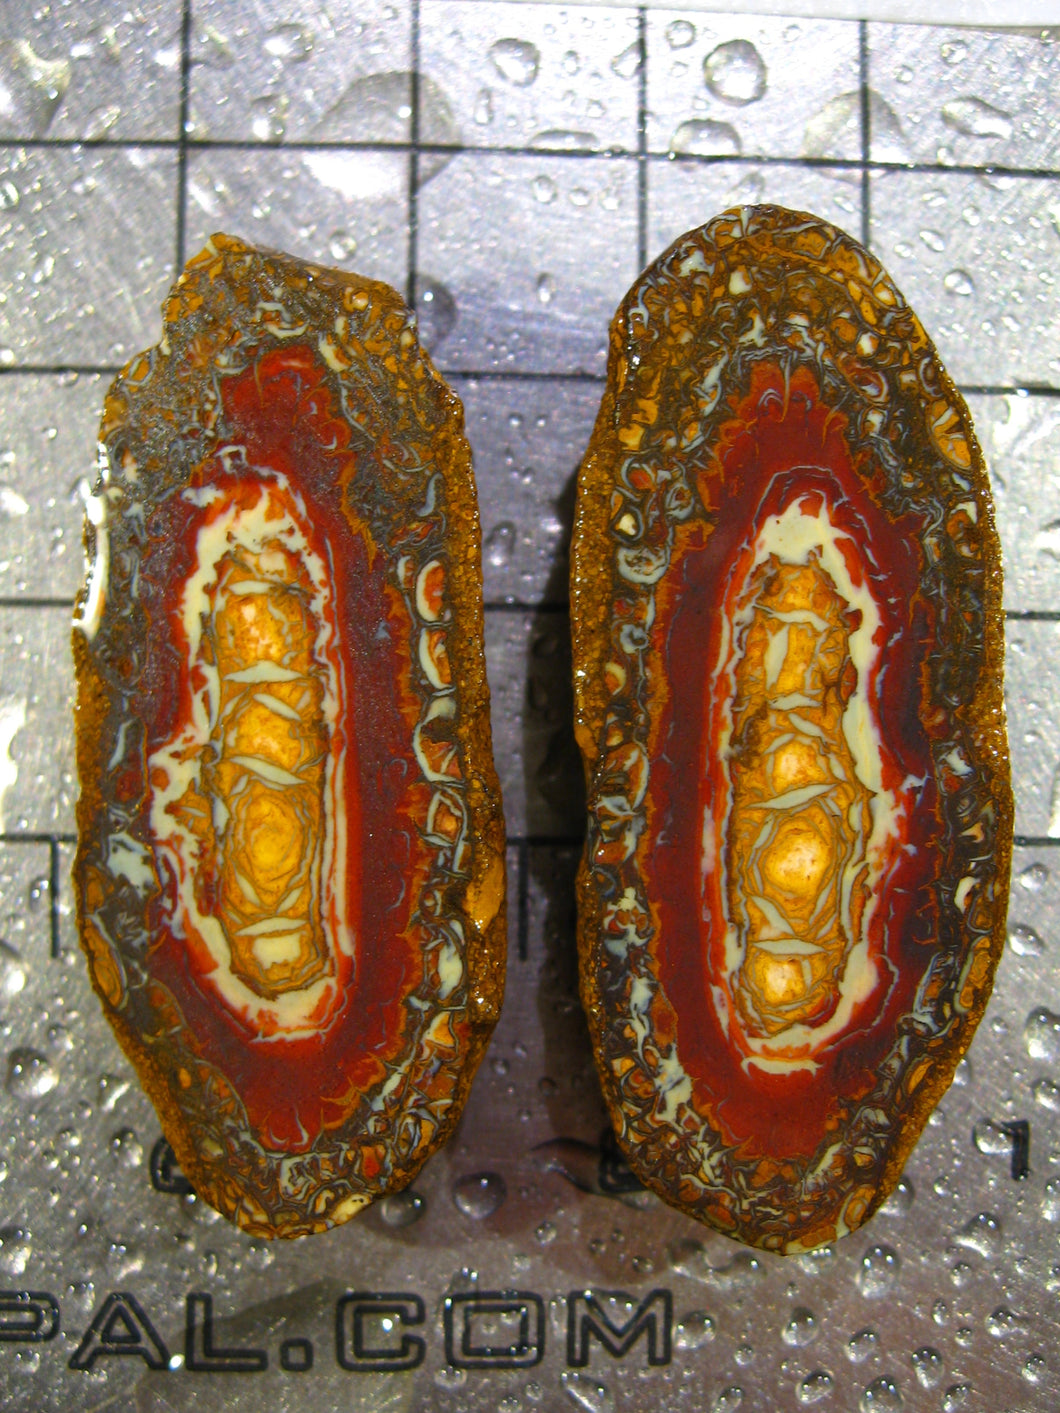 76 cts Australien Roh/rough Yowah Nuss Nut Boulder Matrix Opal Sammler Schleifer